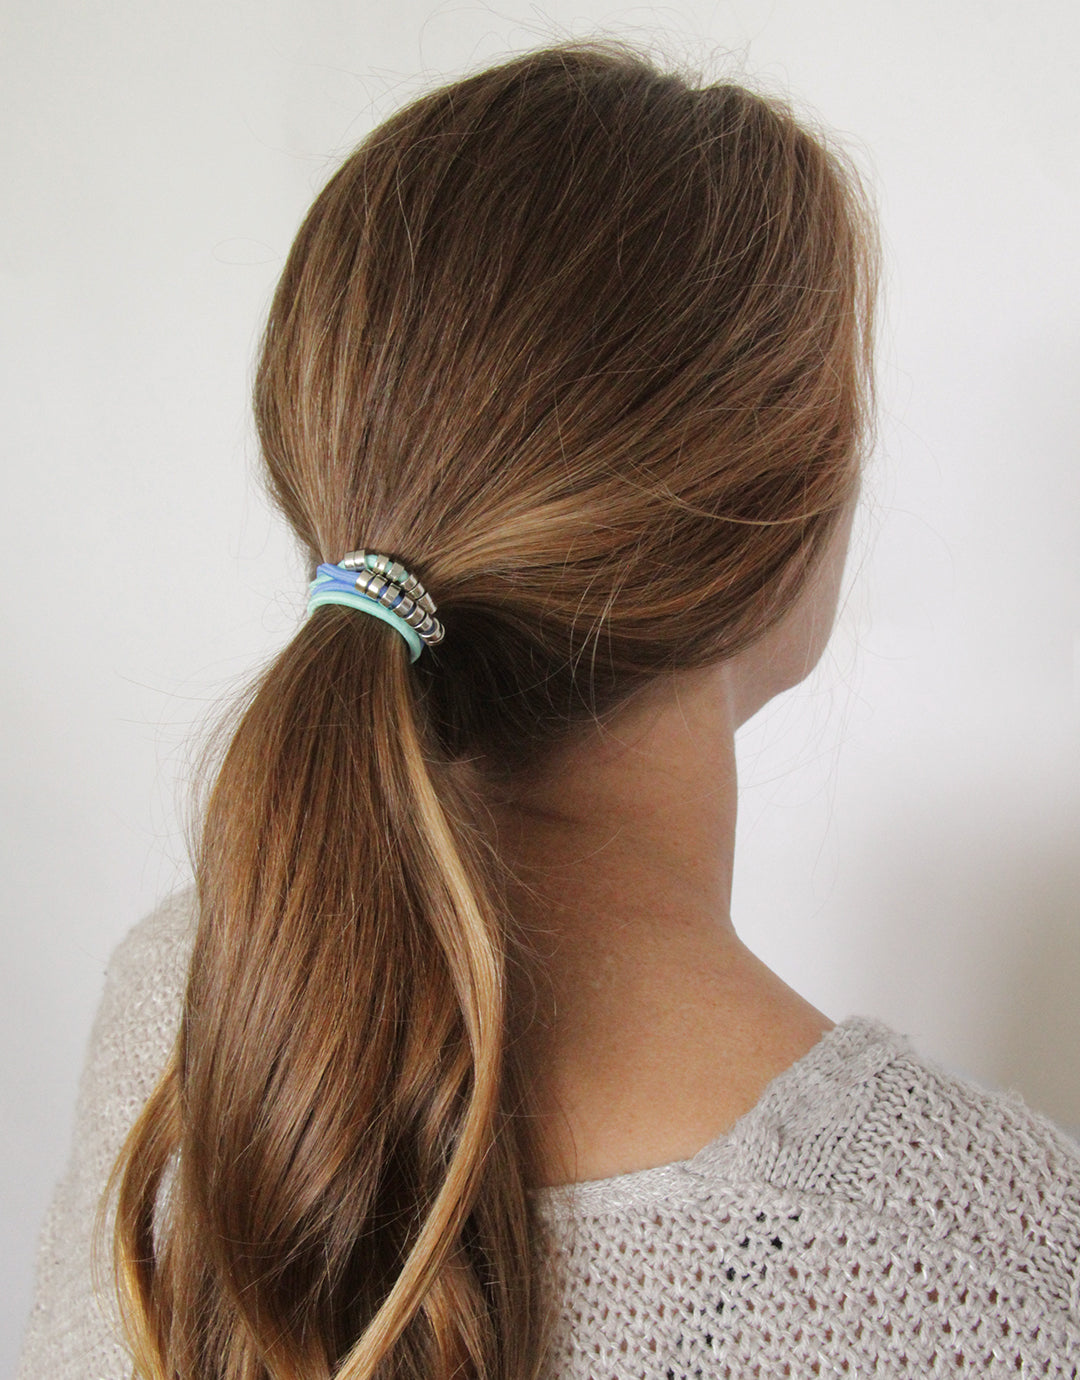 BANDED's Hair Ties + Accessories - La Mer Disk - Embellished Hair Ties